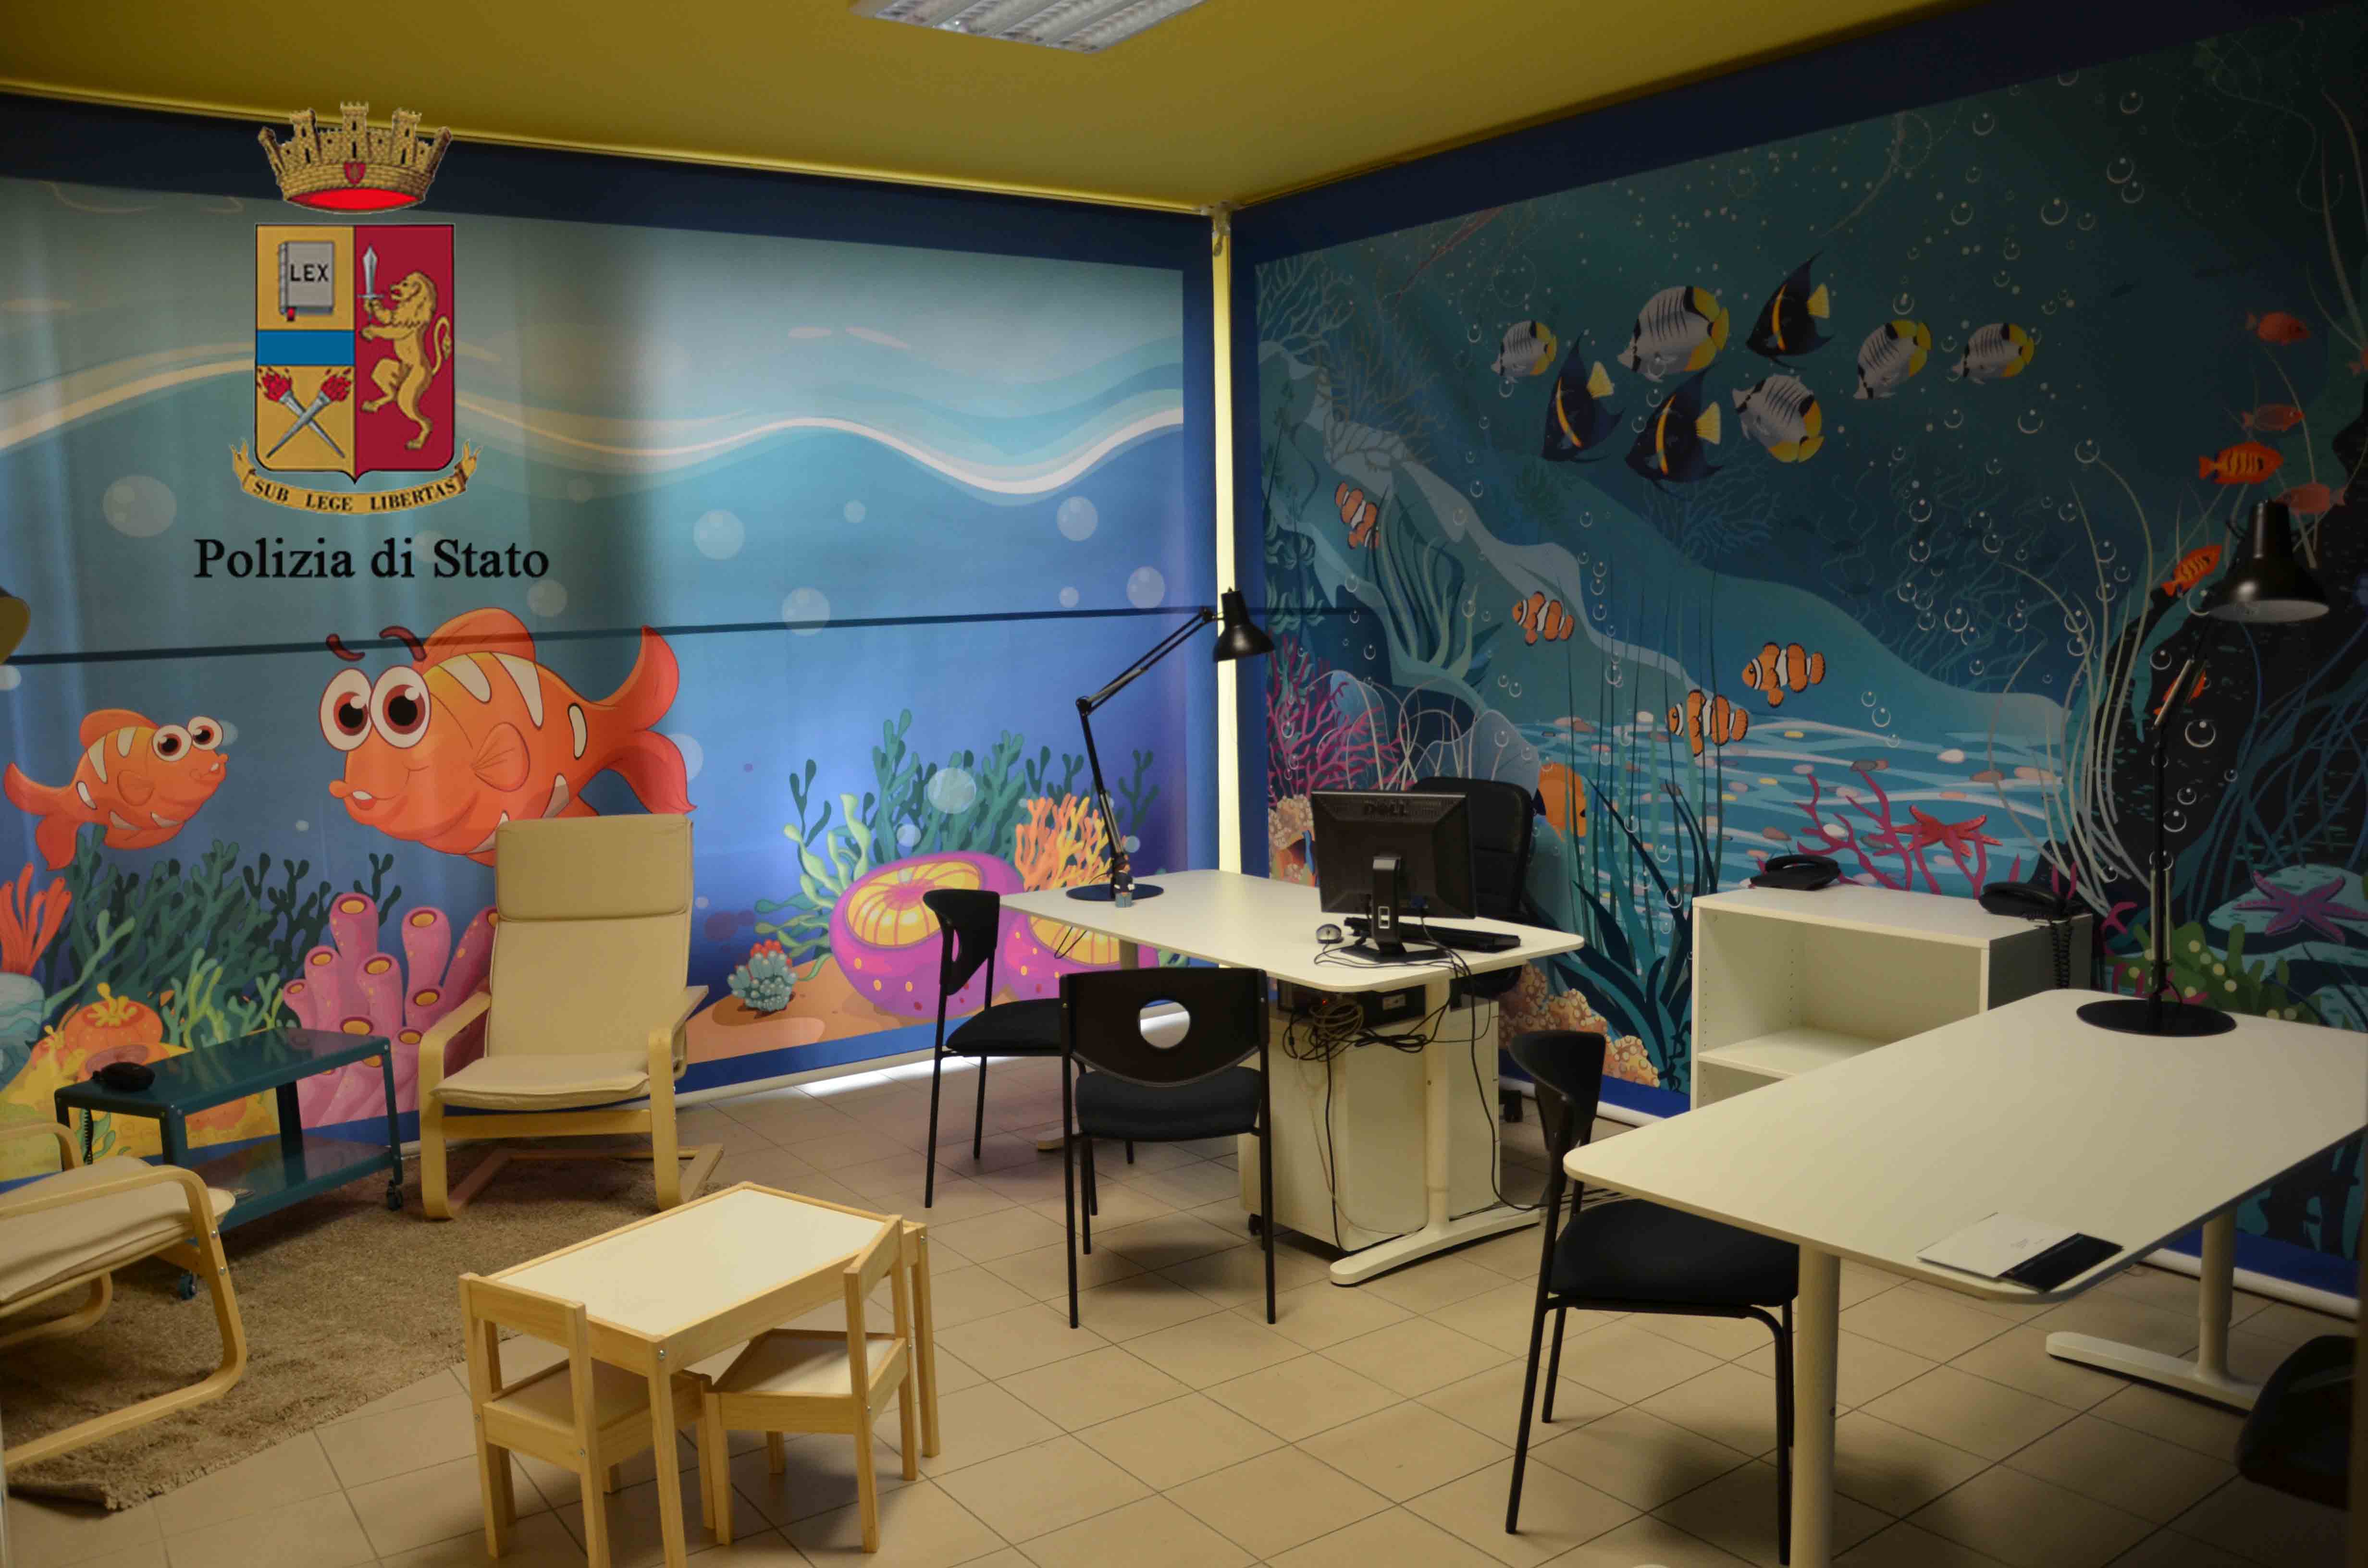   Ragusa – La Polizia di Stato ha realizzato una stanza a misura di bambino per le audizioni protette